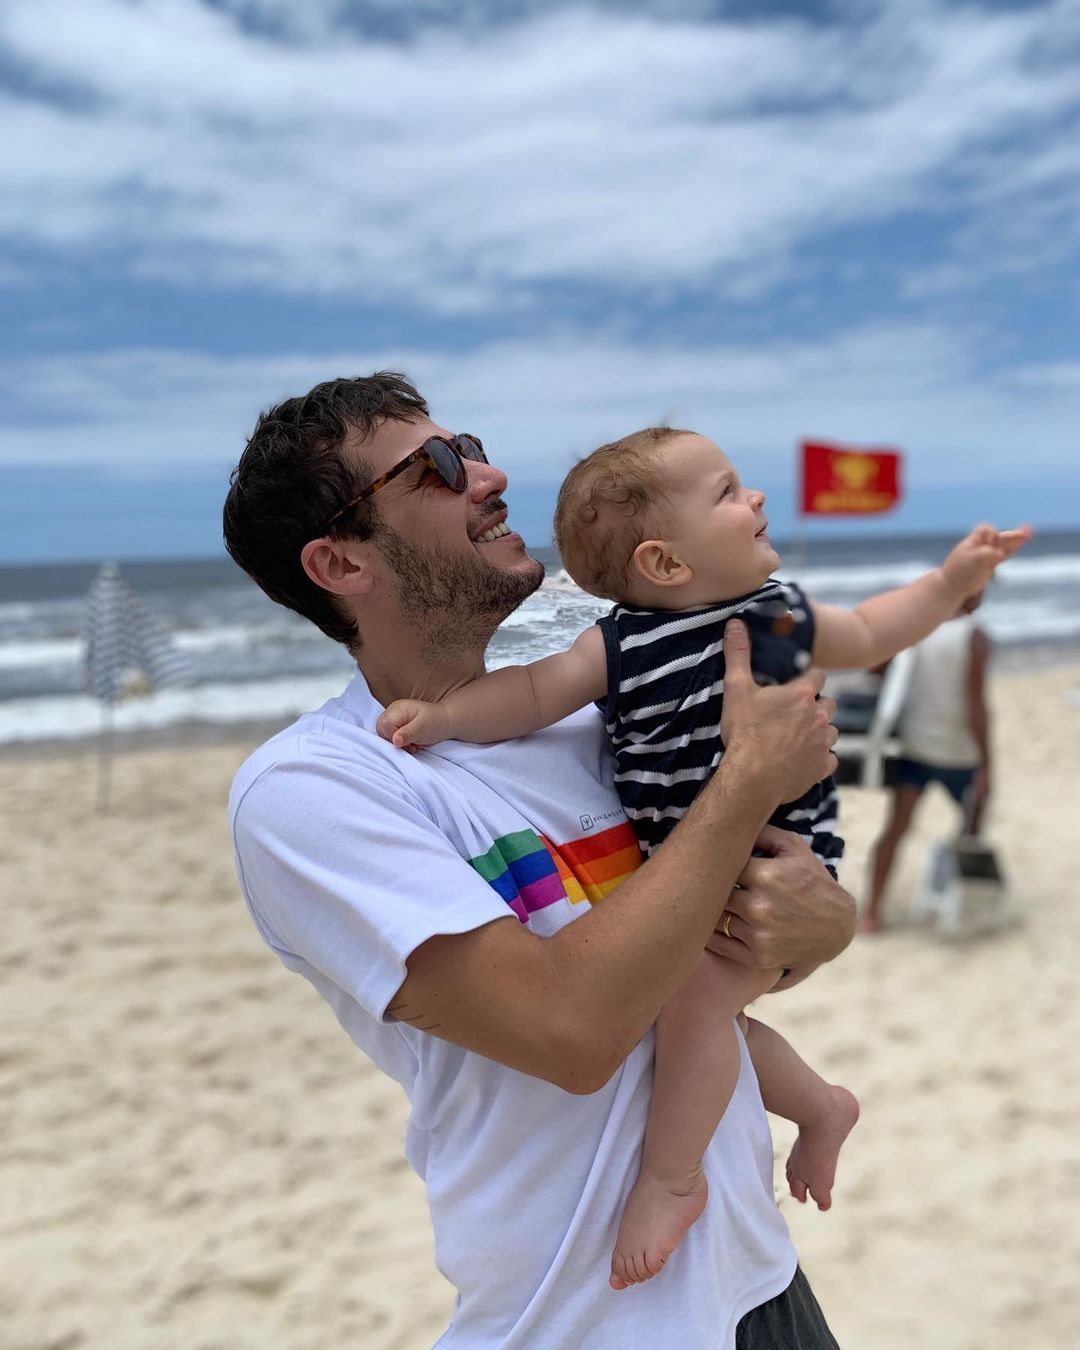 Jayme Matarazzo posa com o filho em praia e fala sobre paternidade  (Foto: Reprodução / Instagram)